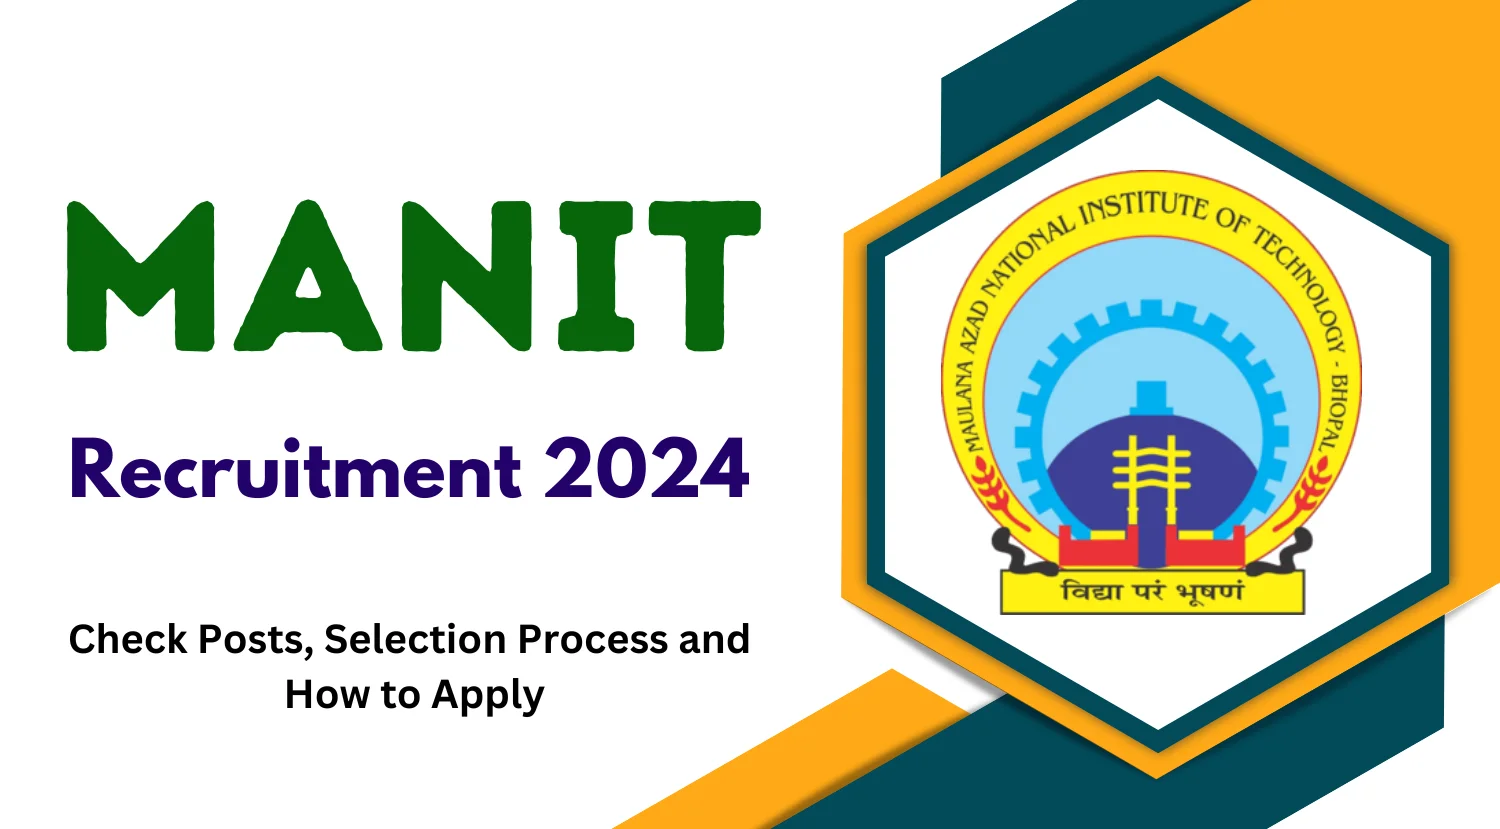 MANIT Recruitment 2024